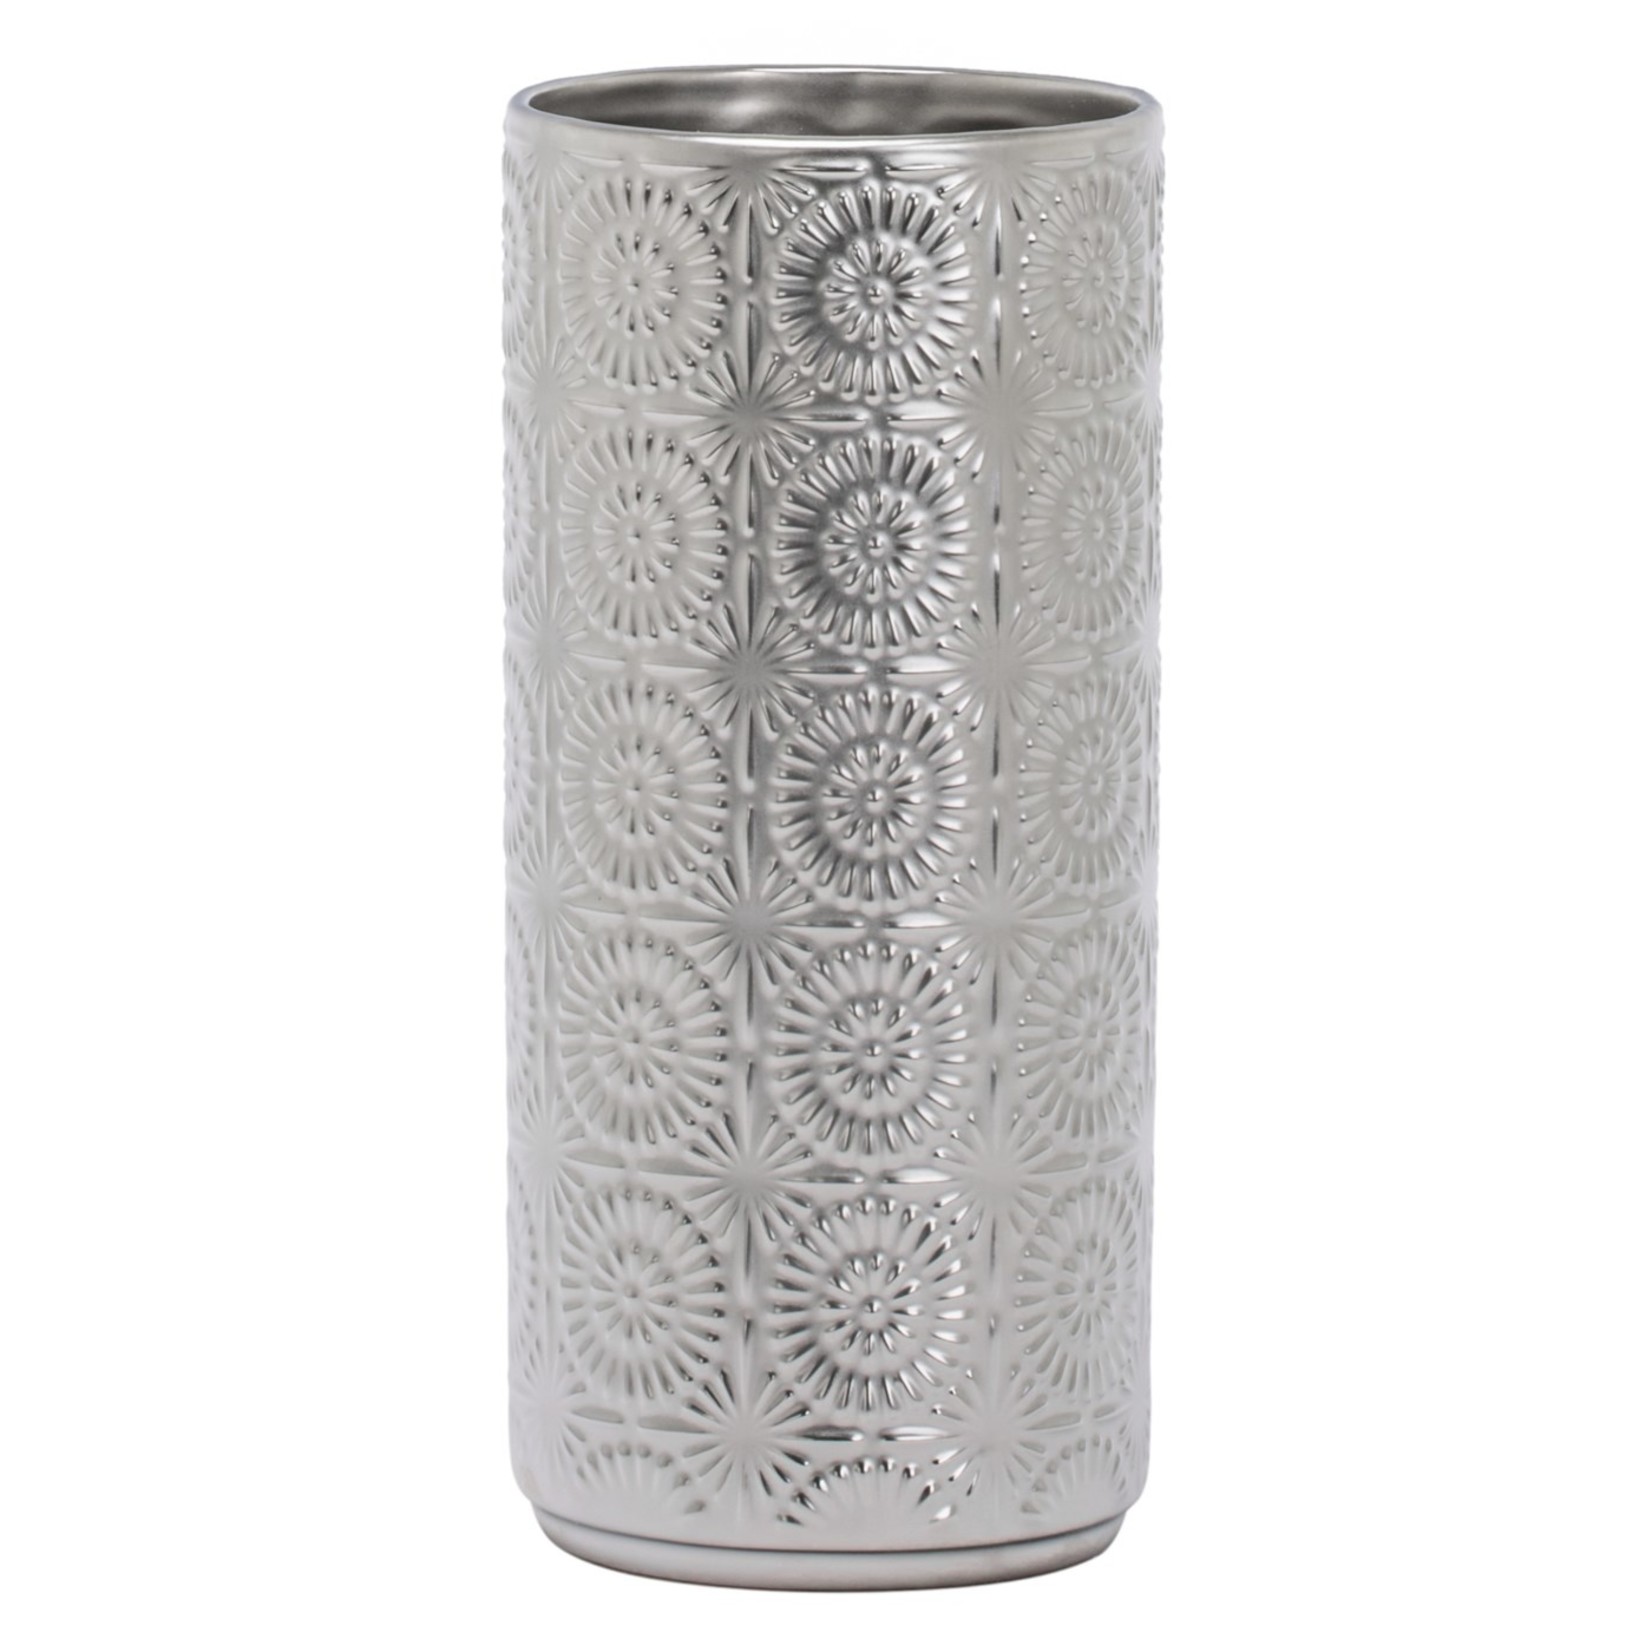 Torre & Tagus Clara Mandala Silver Vase - 11.5"